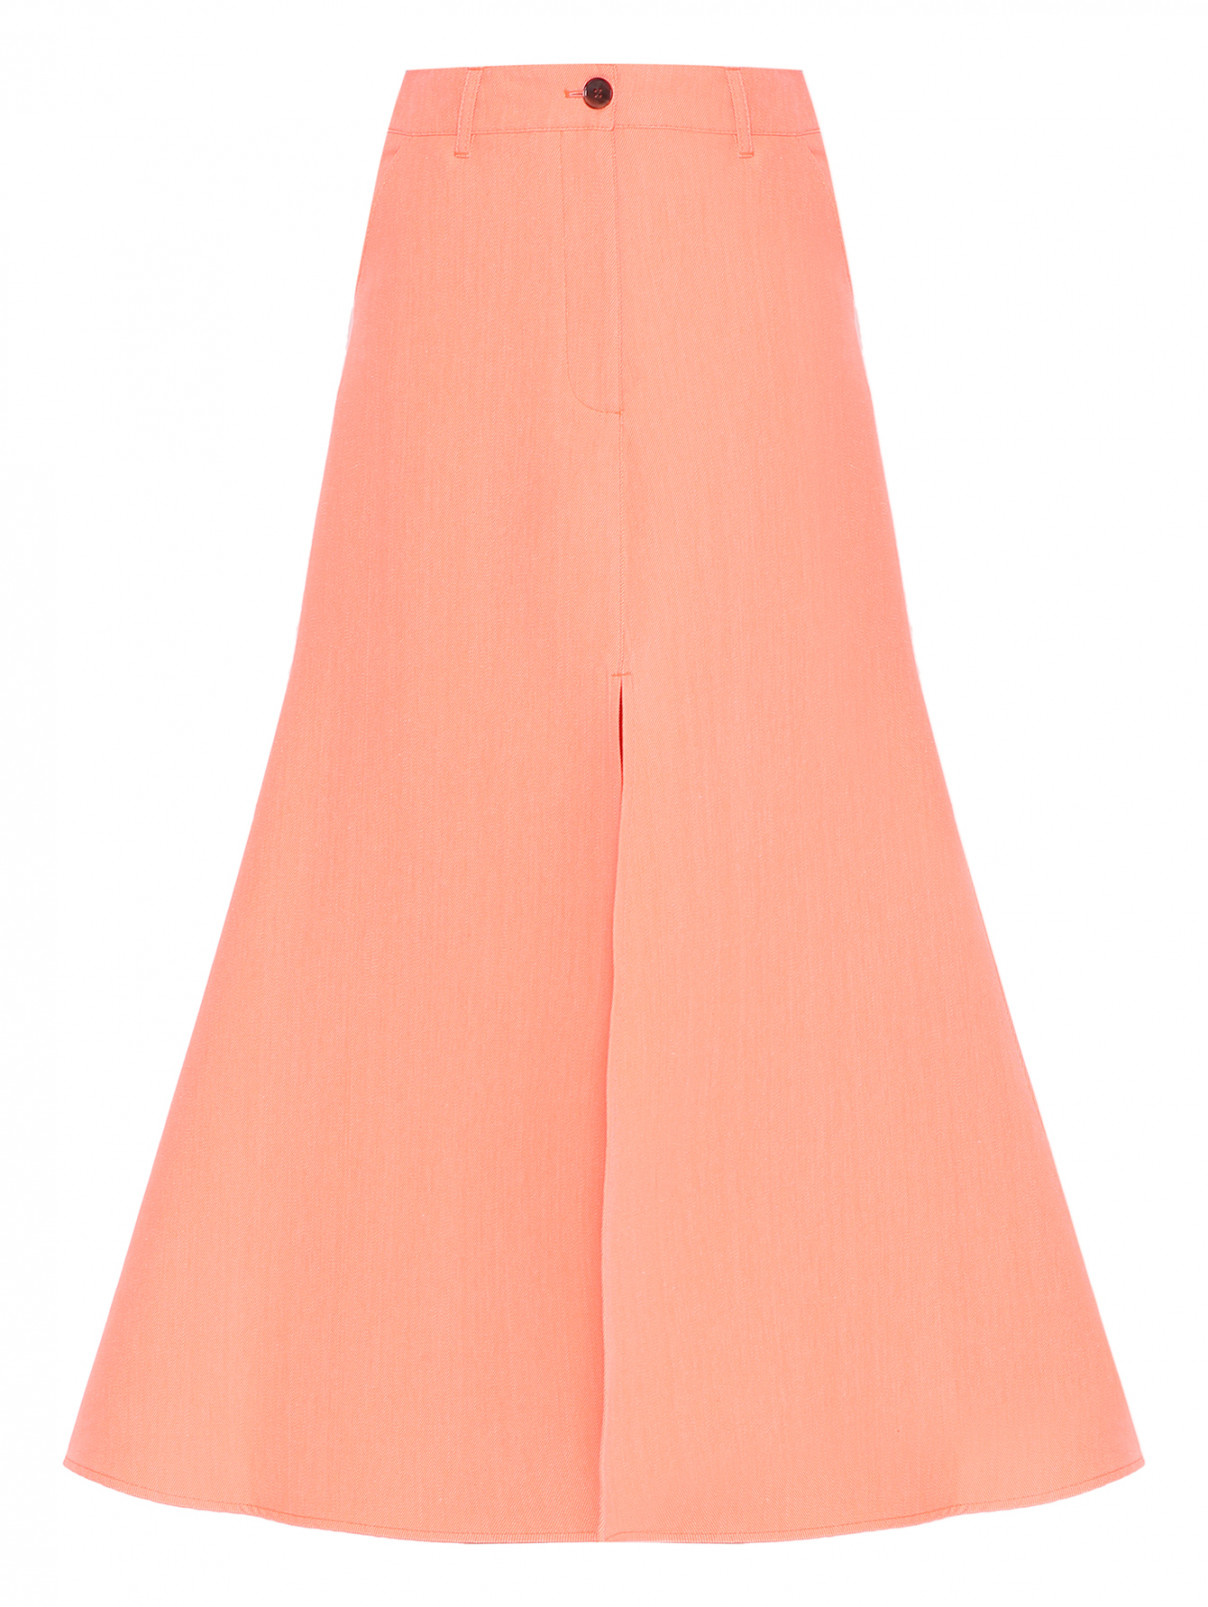 Юбка-макси с разрезом Essentiel Antwerp  –  Общий вид  – Цвет:  Оранжевый